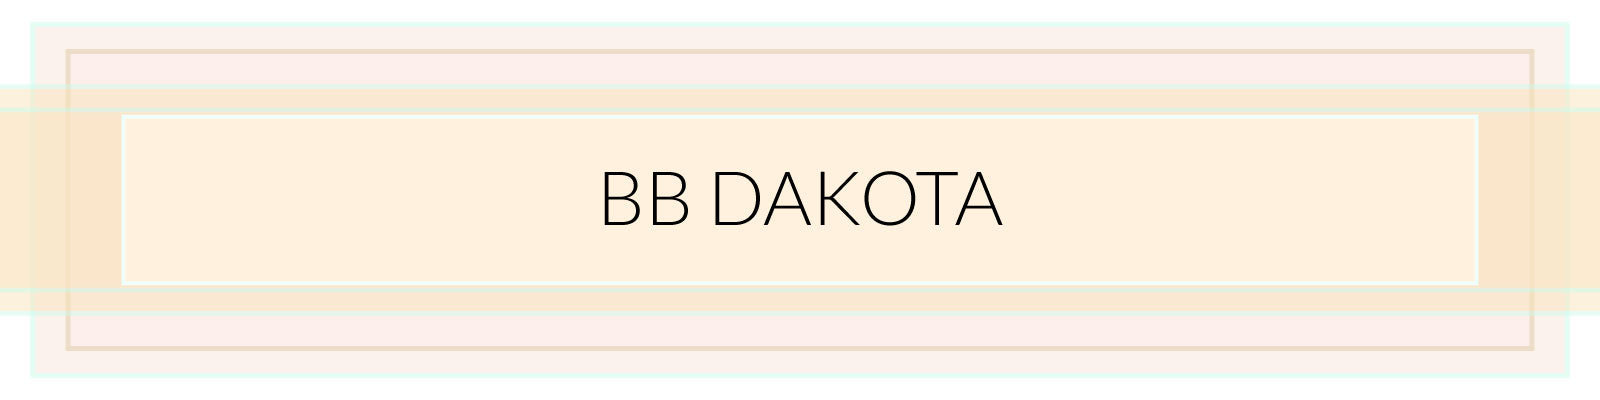 Brand Crush: BB Dakota